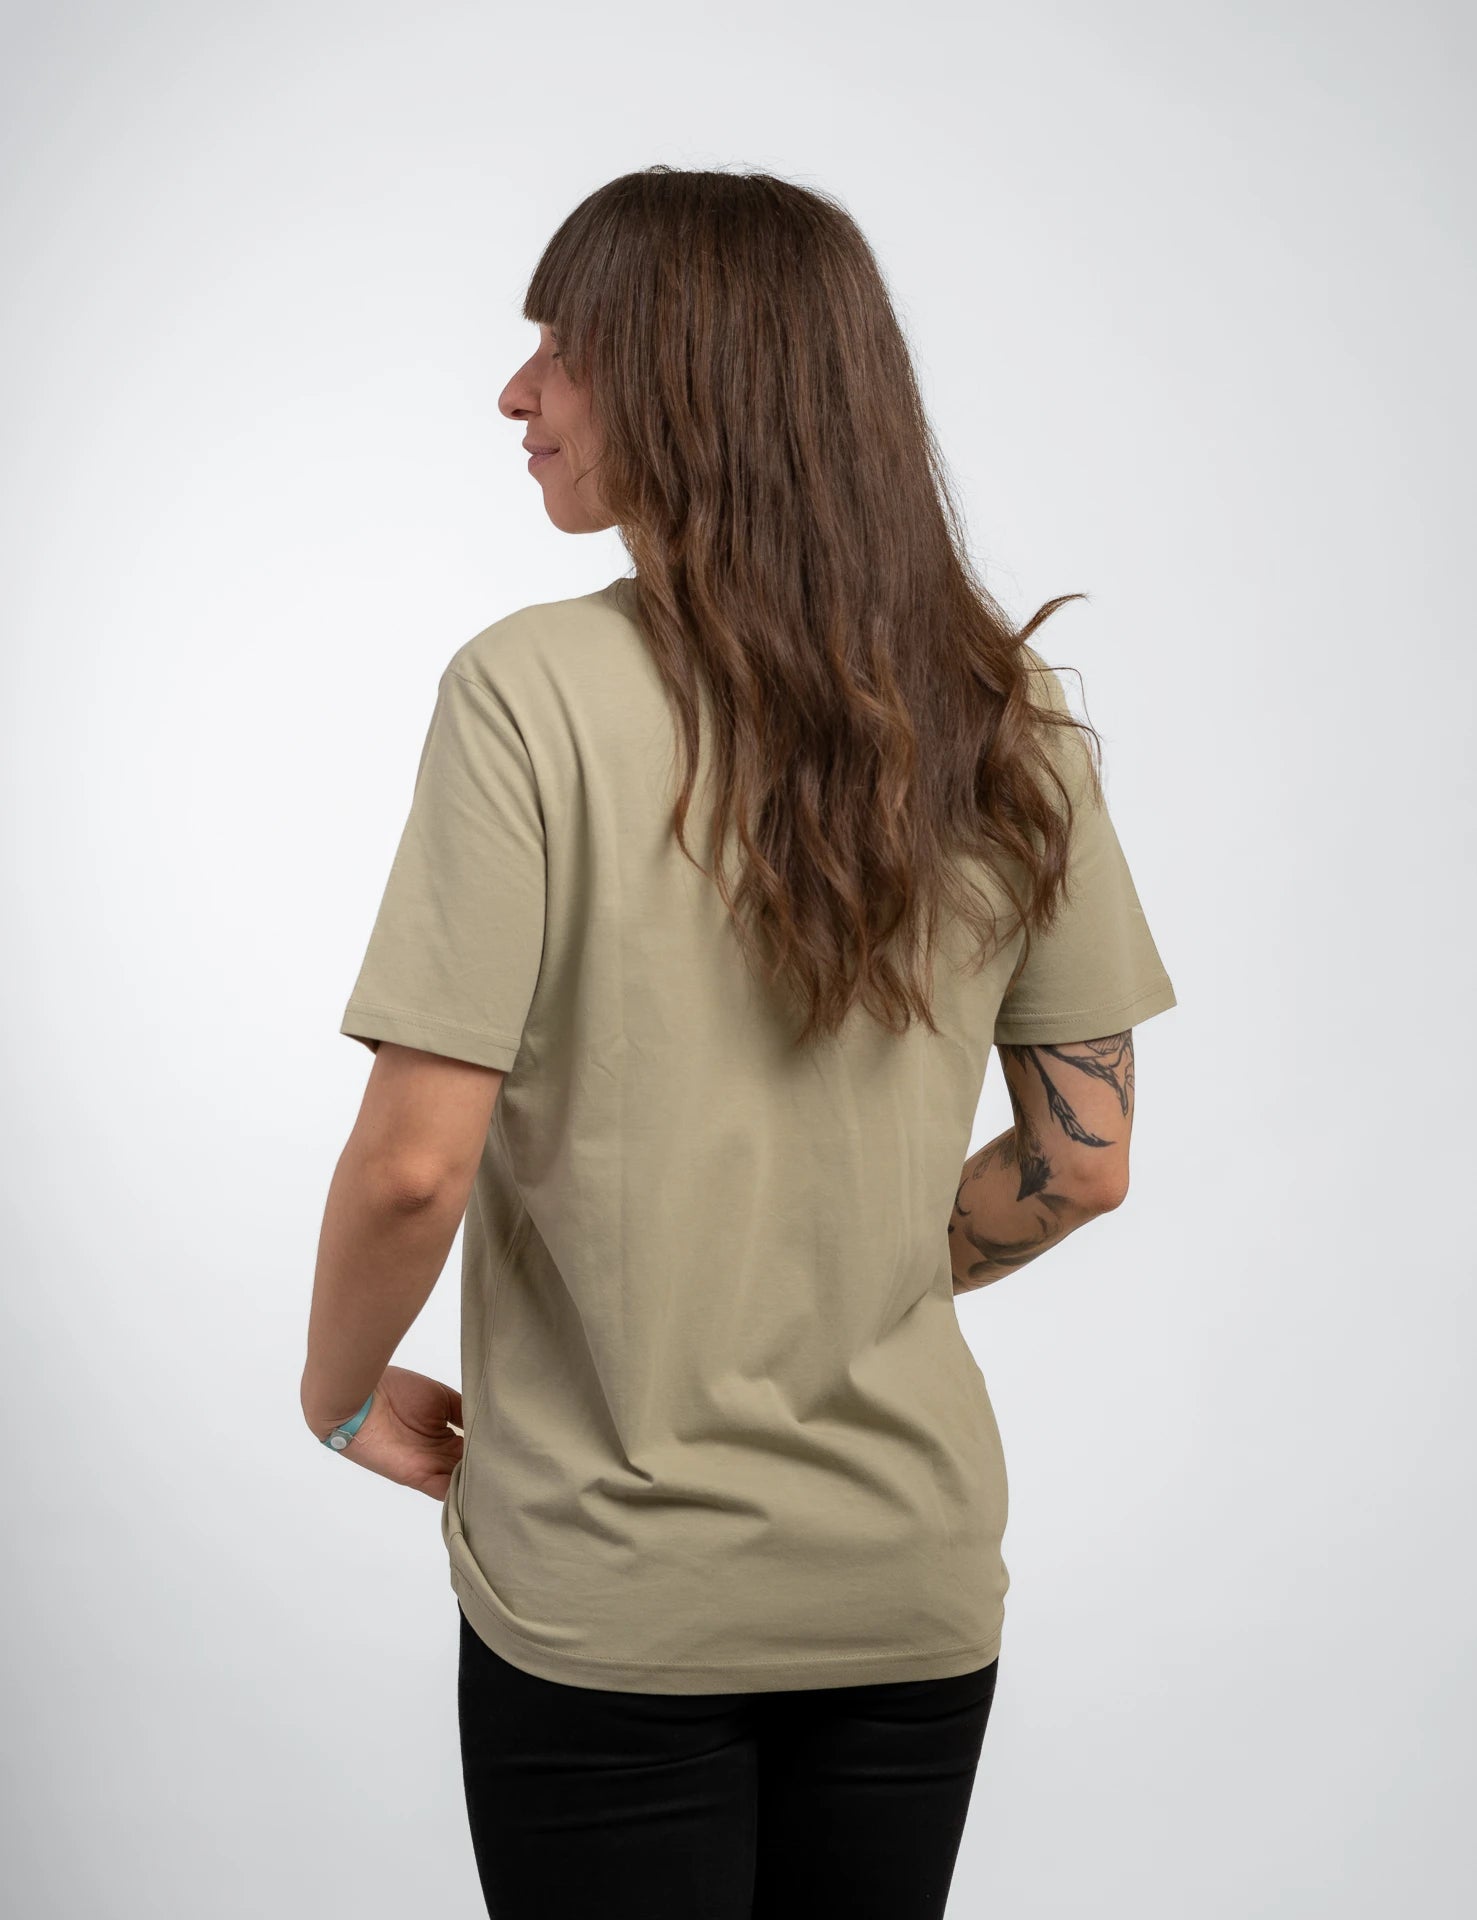 Lightgreen classic Bio-Baumwolle T-Shirt mit beigen, 1d totry Stick auf der Brust.